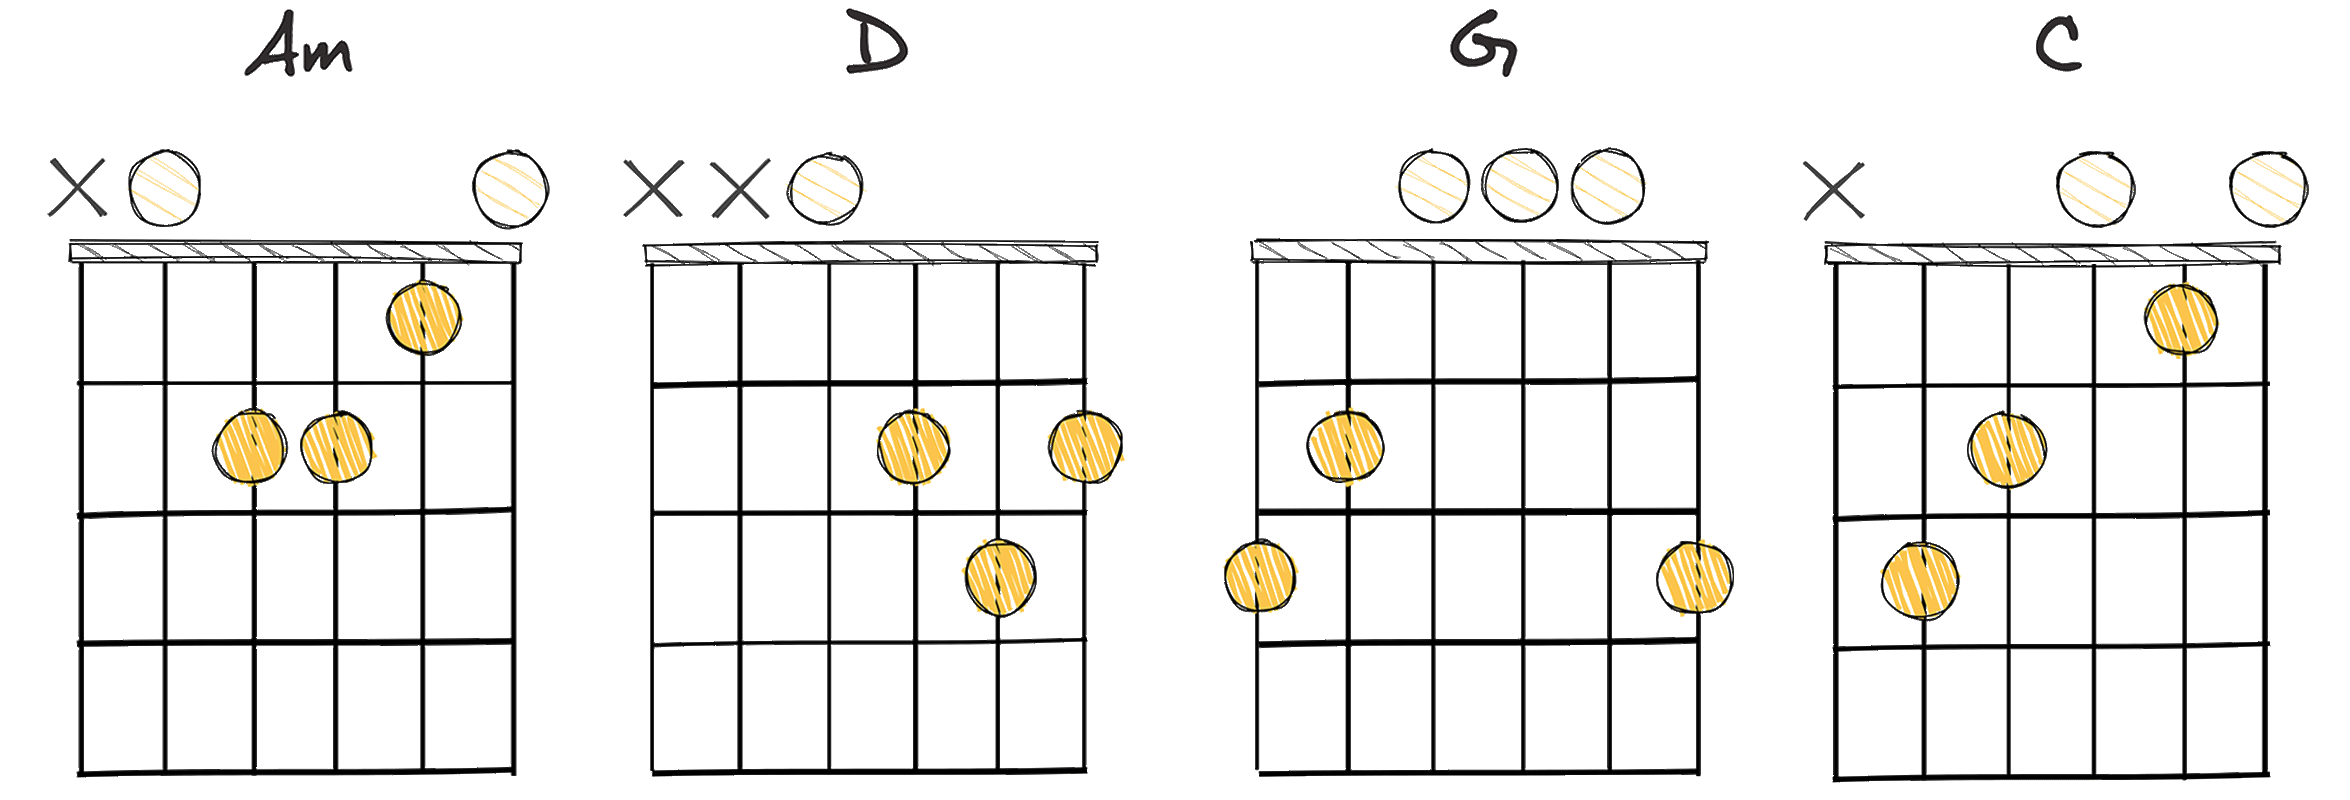 vi-II-V-I (6-2-5-1) chords diagram